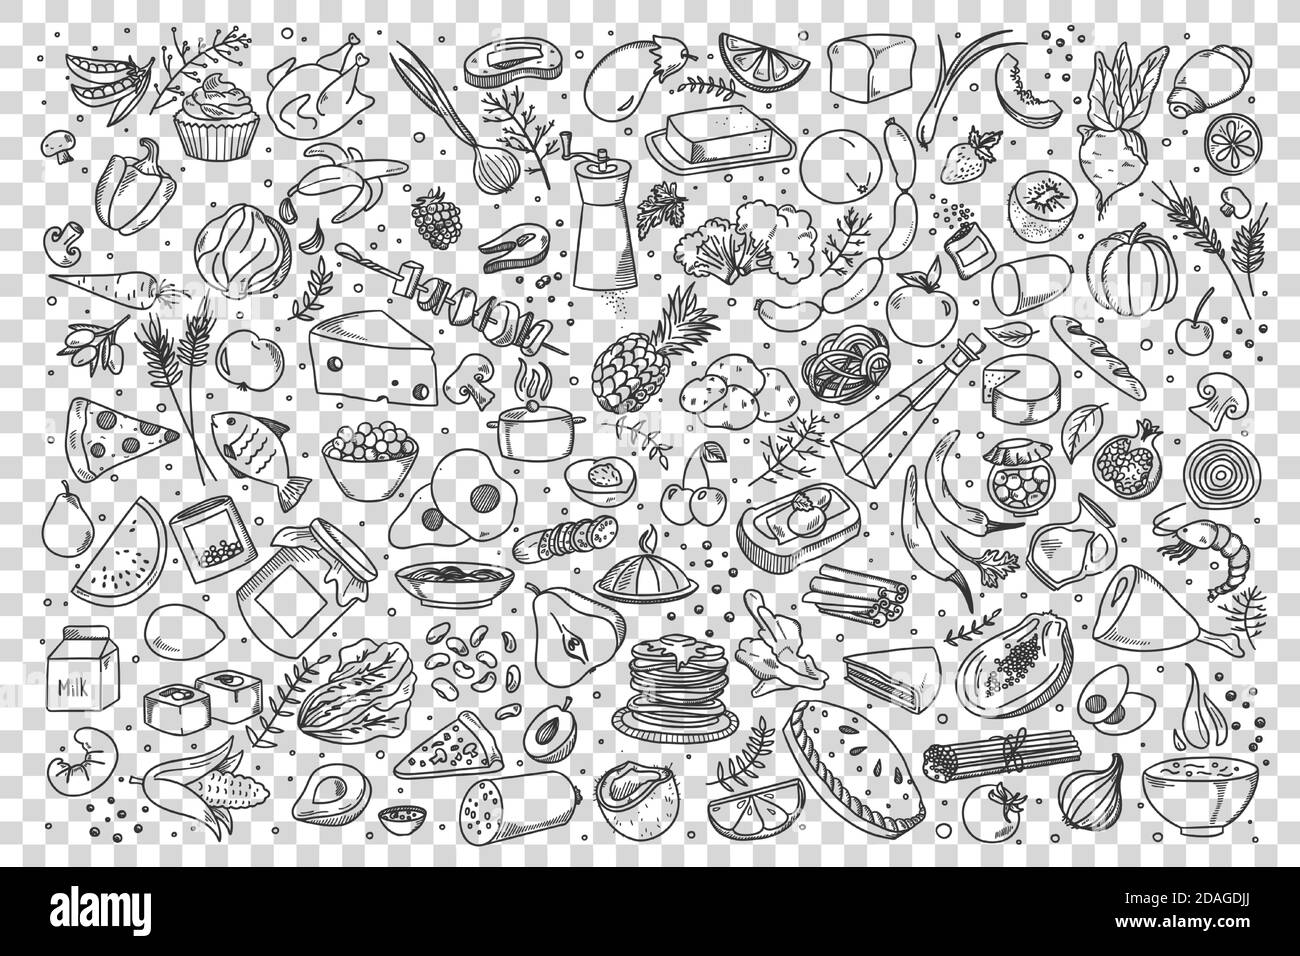 Food doodle set Stock Vector